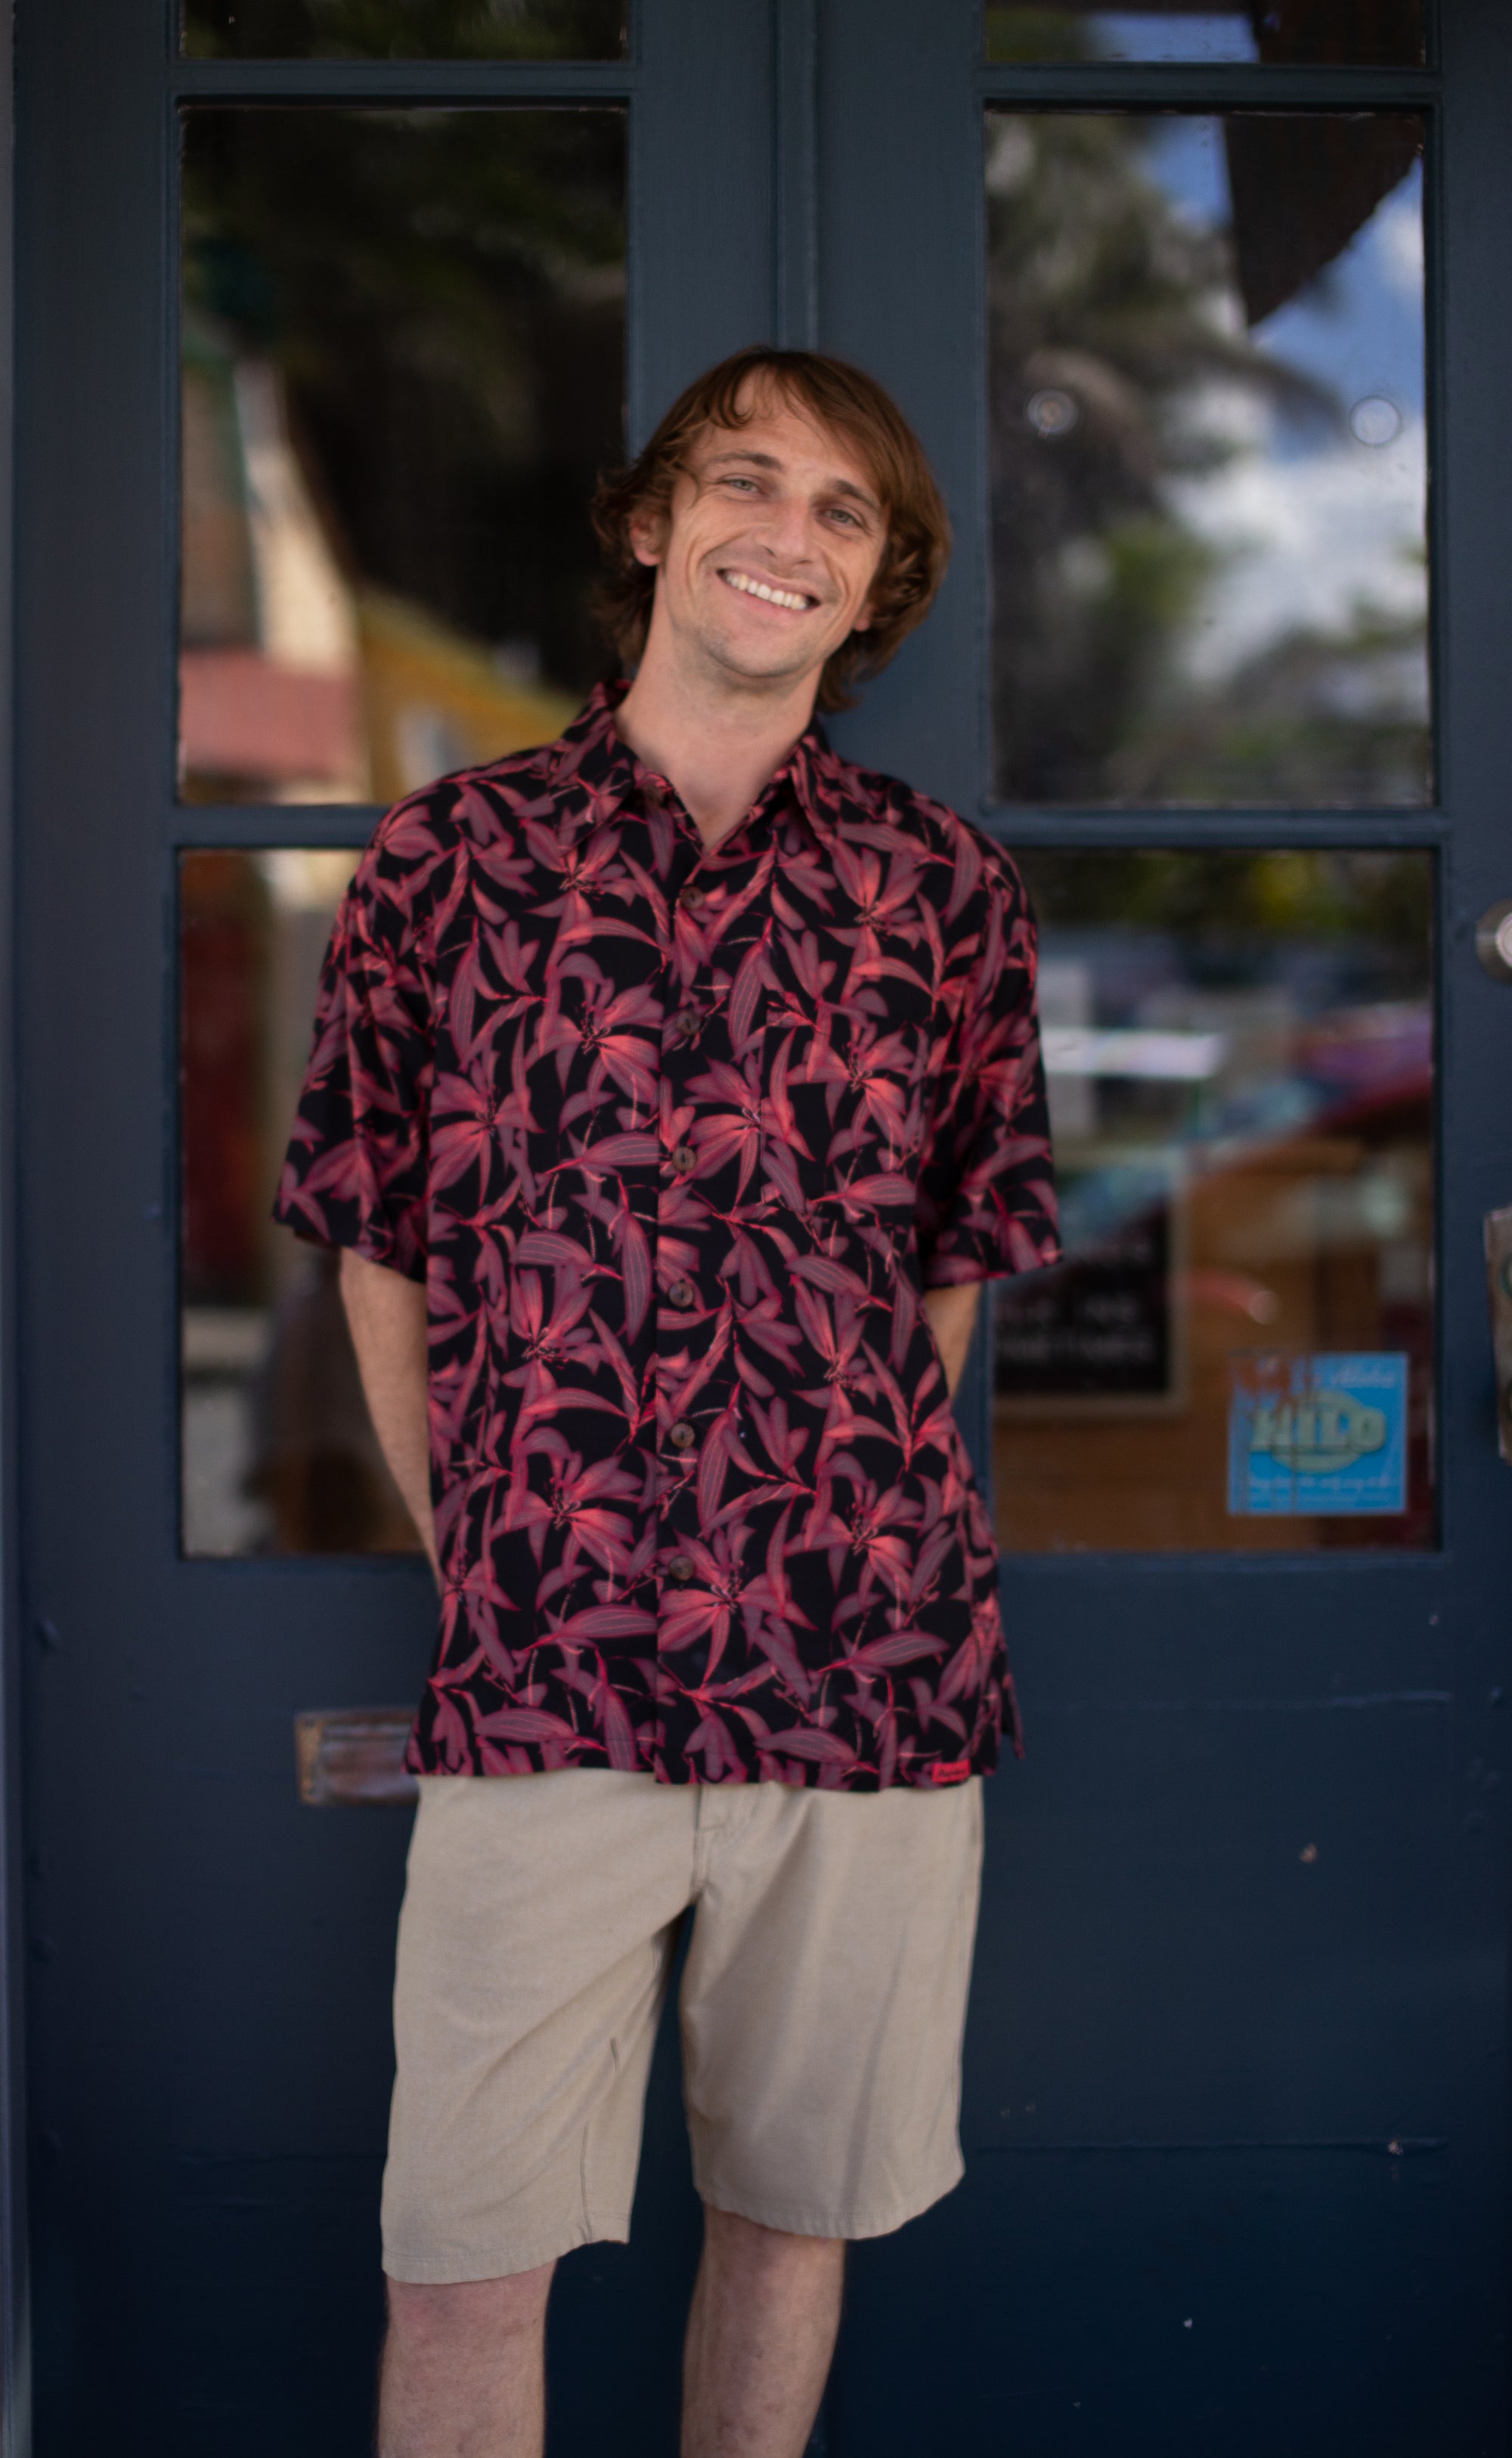 255 - 324C , Men's Aloha shirt